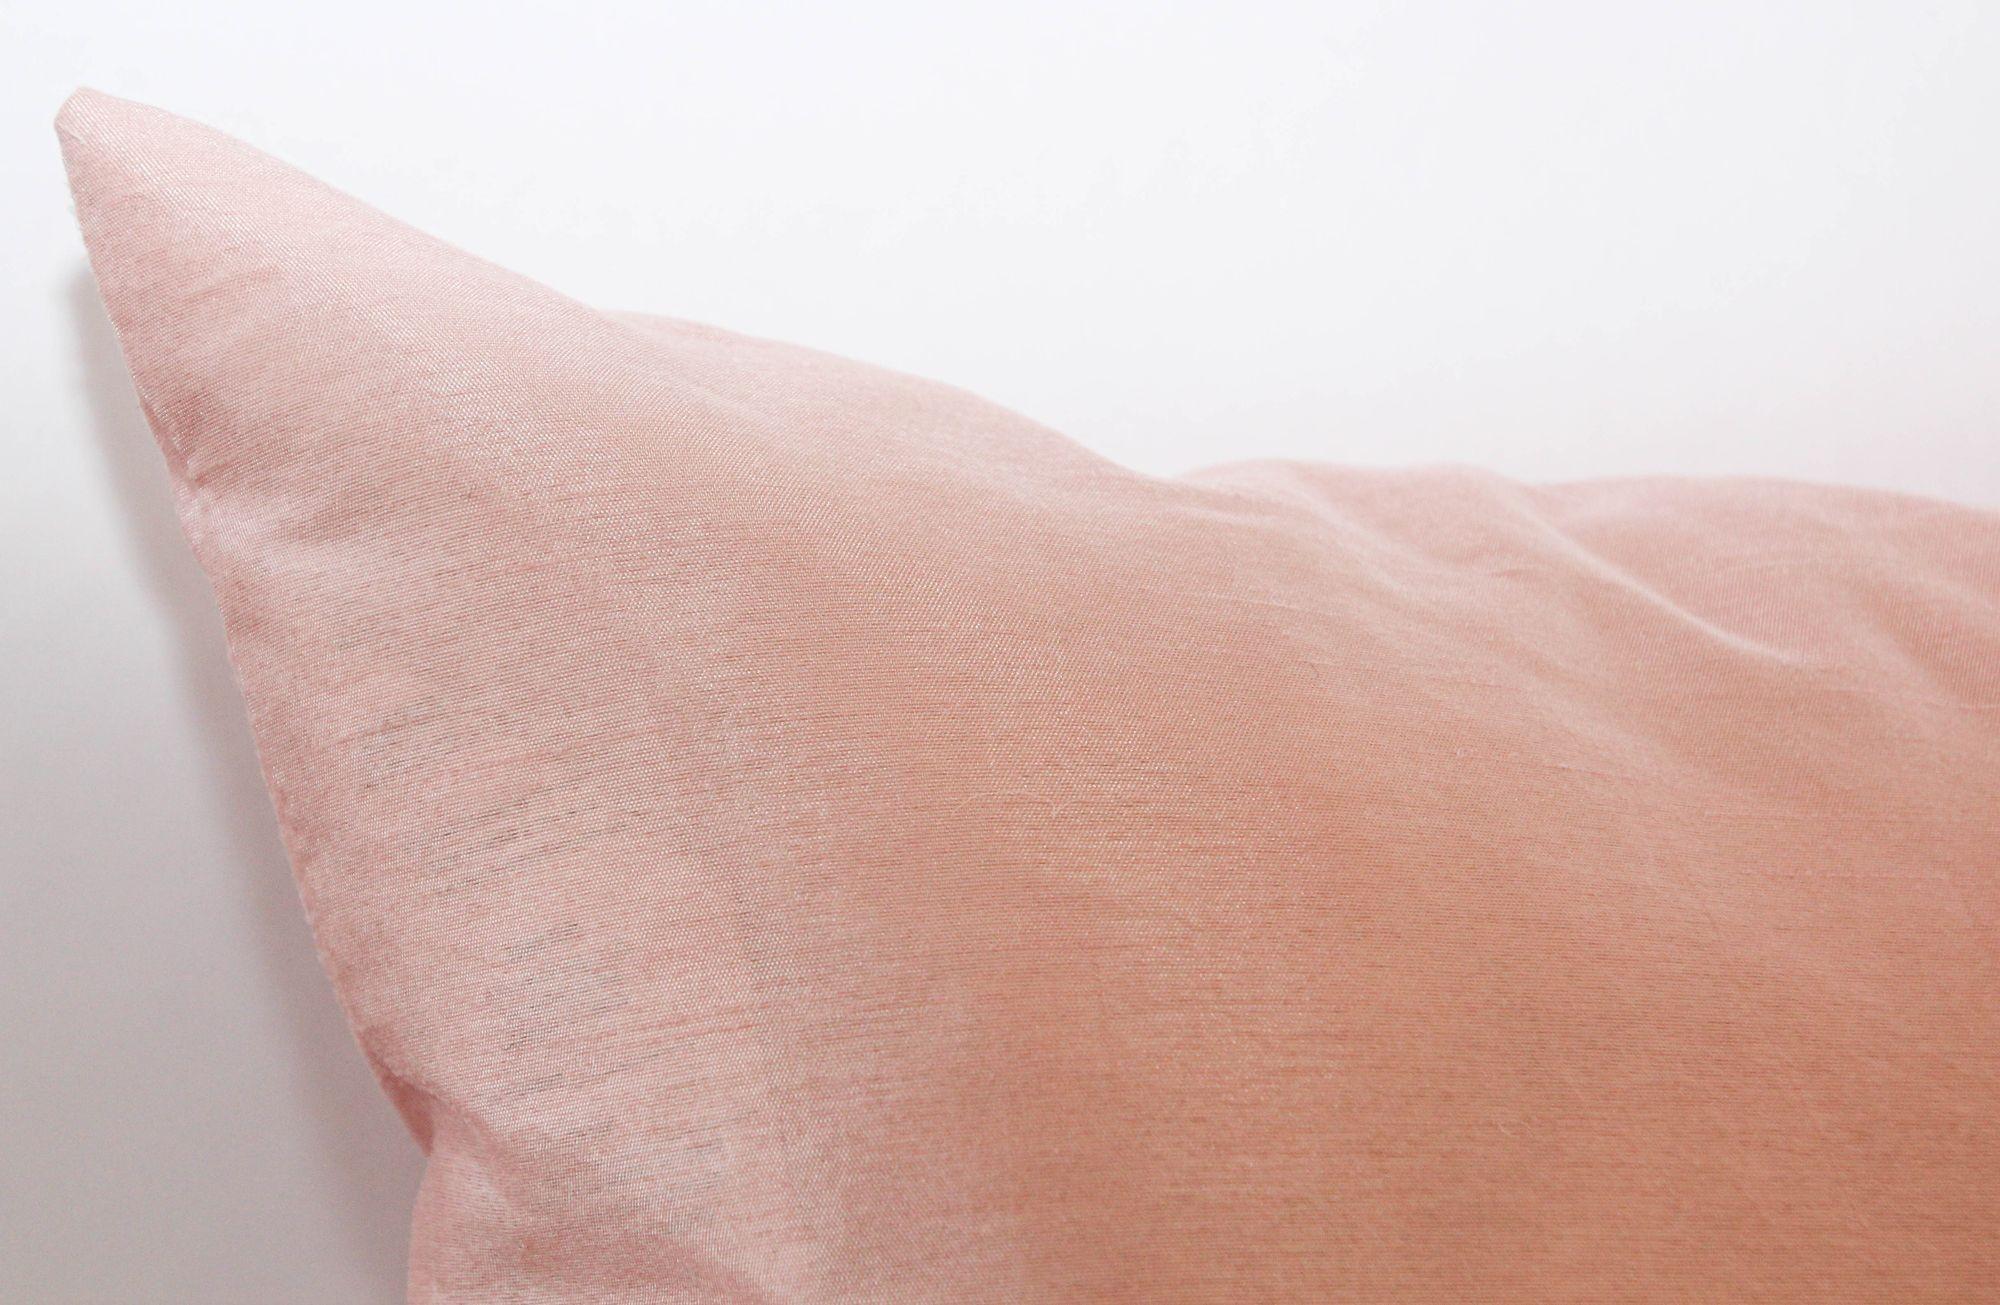 Blush Pink Dupioni Silk Luxus Dekorative Throw Pillow.
Ein wunderschöner rosa Dupionseiden-Kissenbezug aus exquisit gewebter Rohseide.
Dieser Kissenbezug hat eine schöne, natürliche Ausstrahlung, die schöne Pastellfarbe, die Textur und die